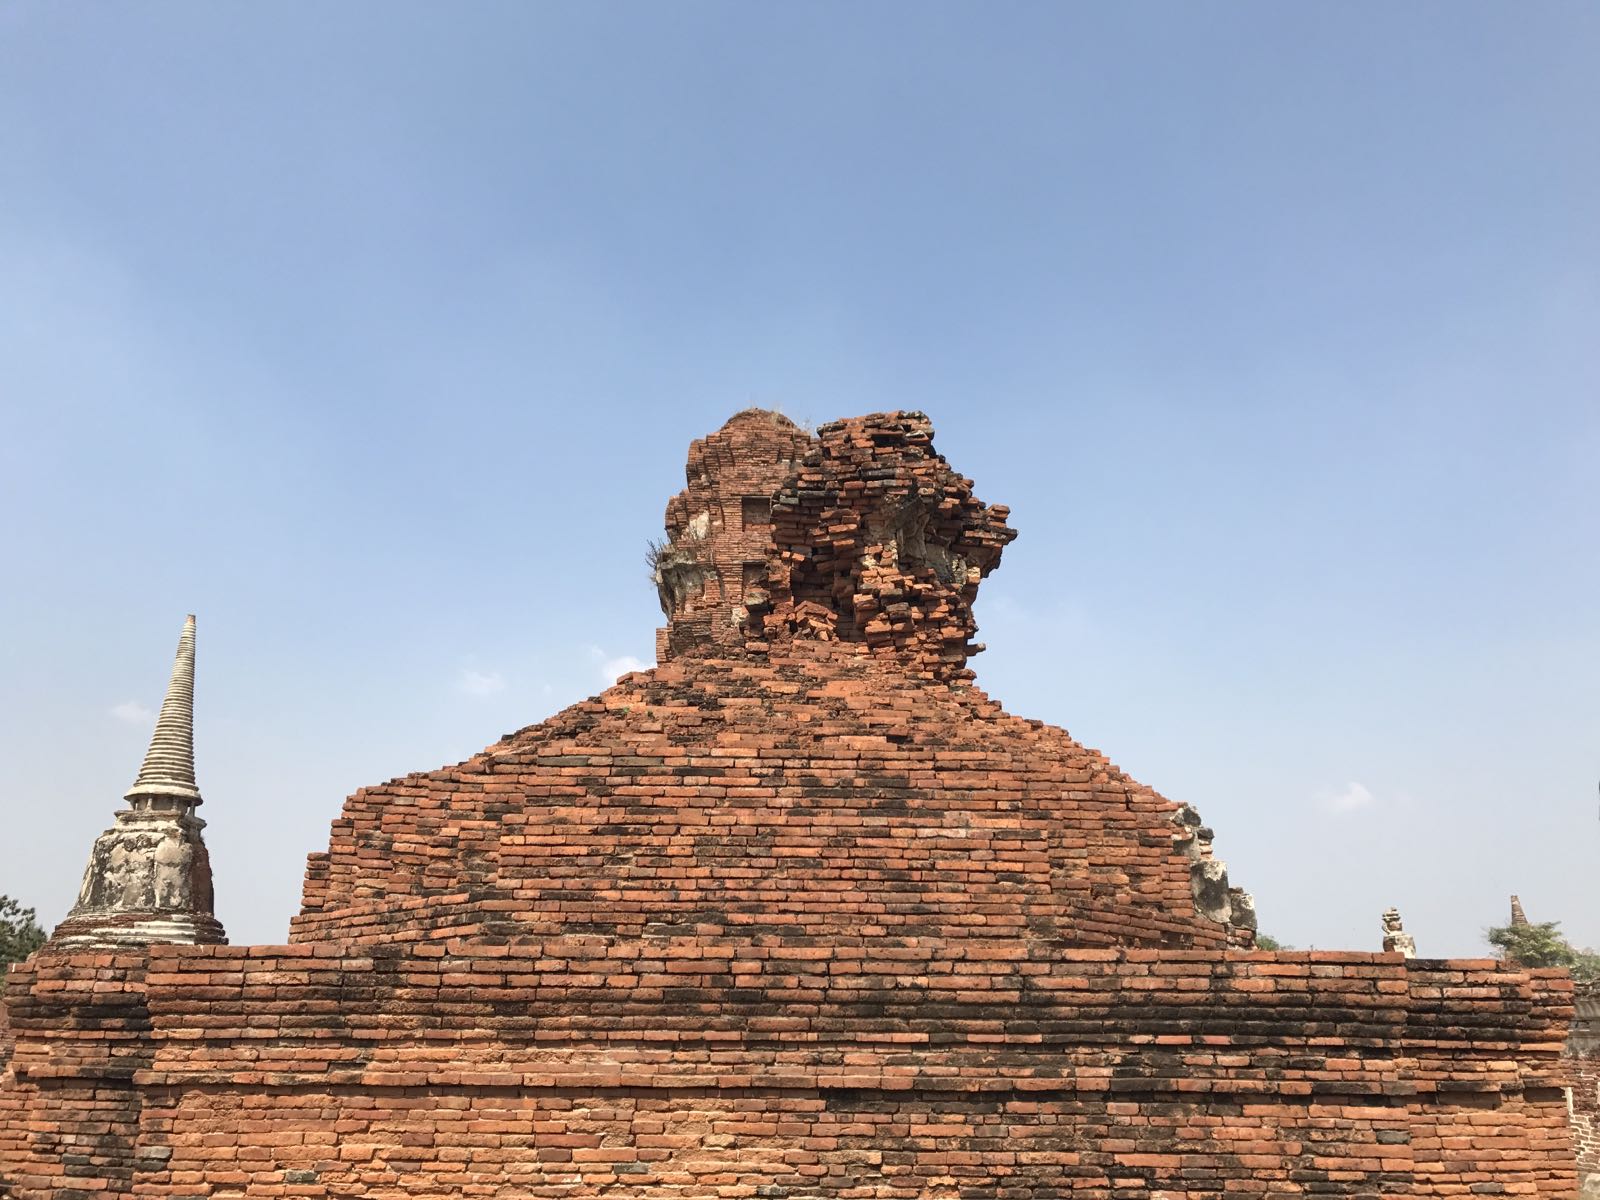 --玛哈泰寺(大城)，是大城最早建成的高棉式佛塔之一，不过现在只剩下底